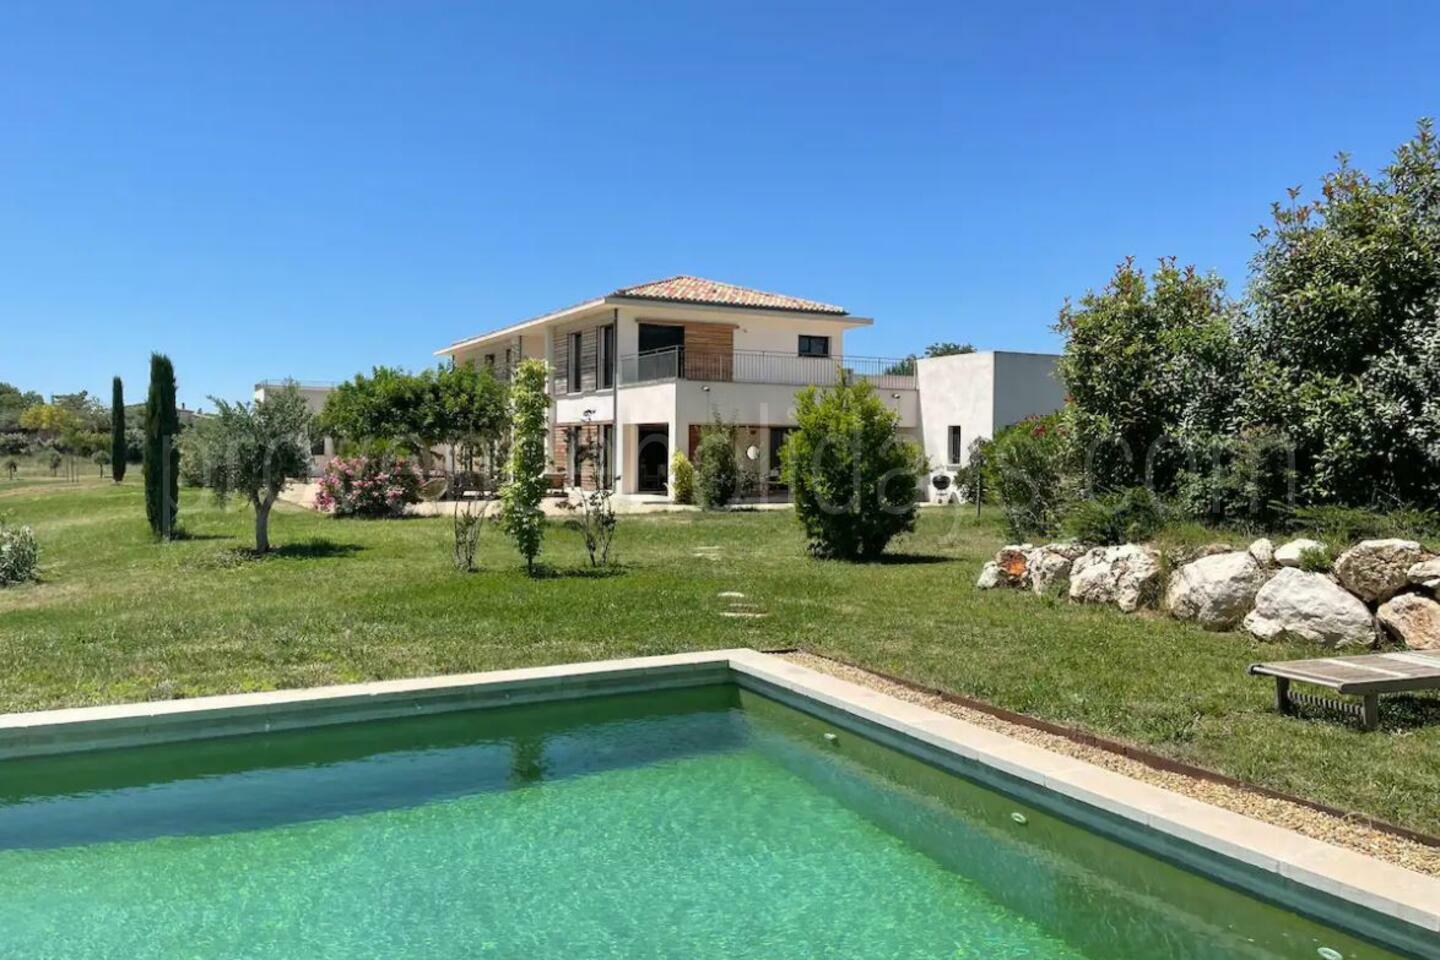 Location de vacances moderne avec piscine privée près d'Aix-en-Provence 1 - Mas des Cigales: Villa: Pool